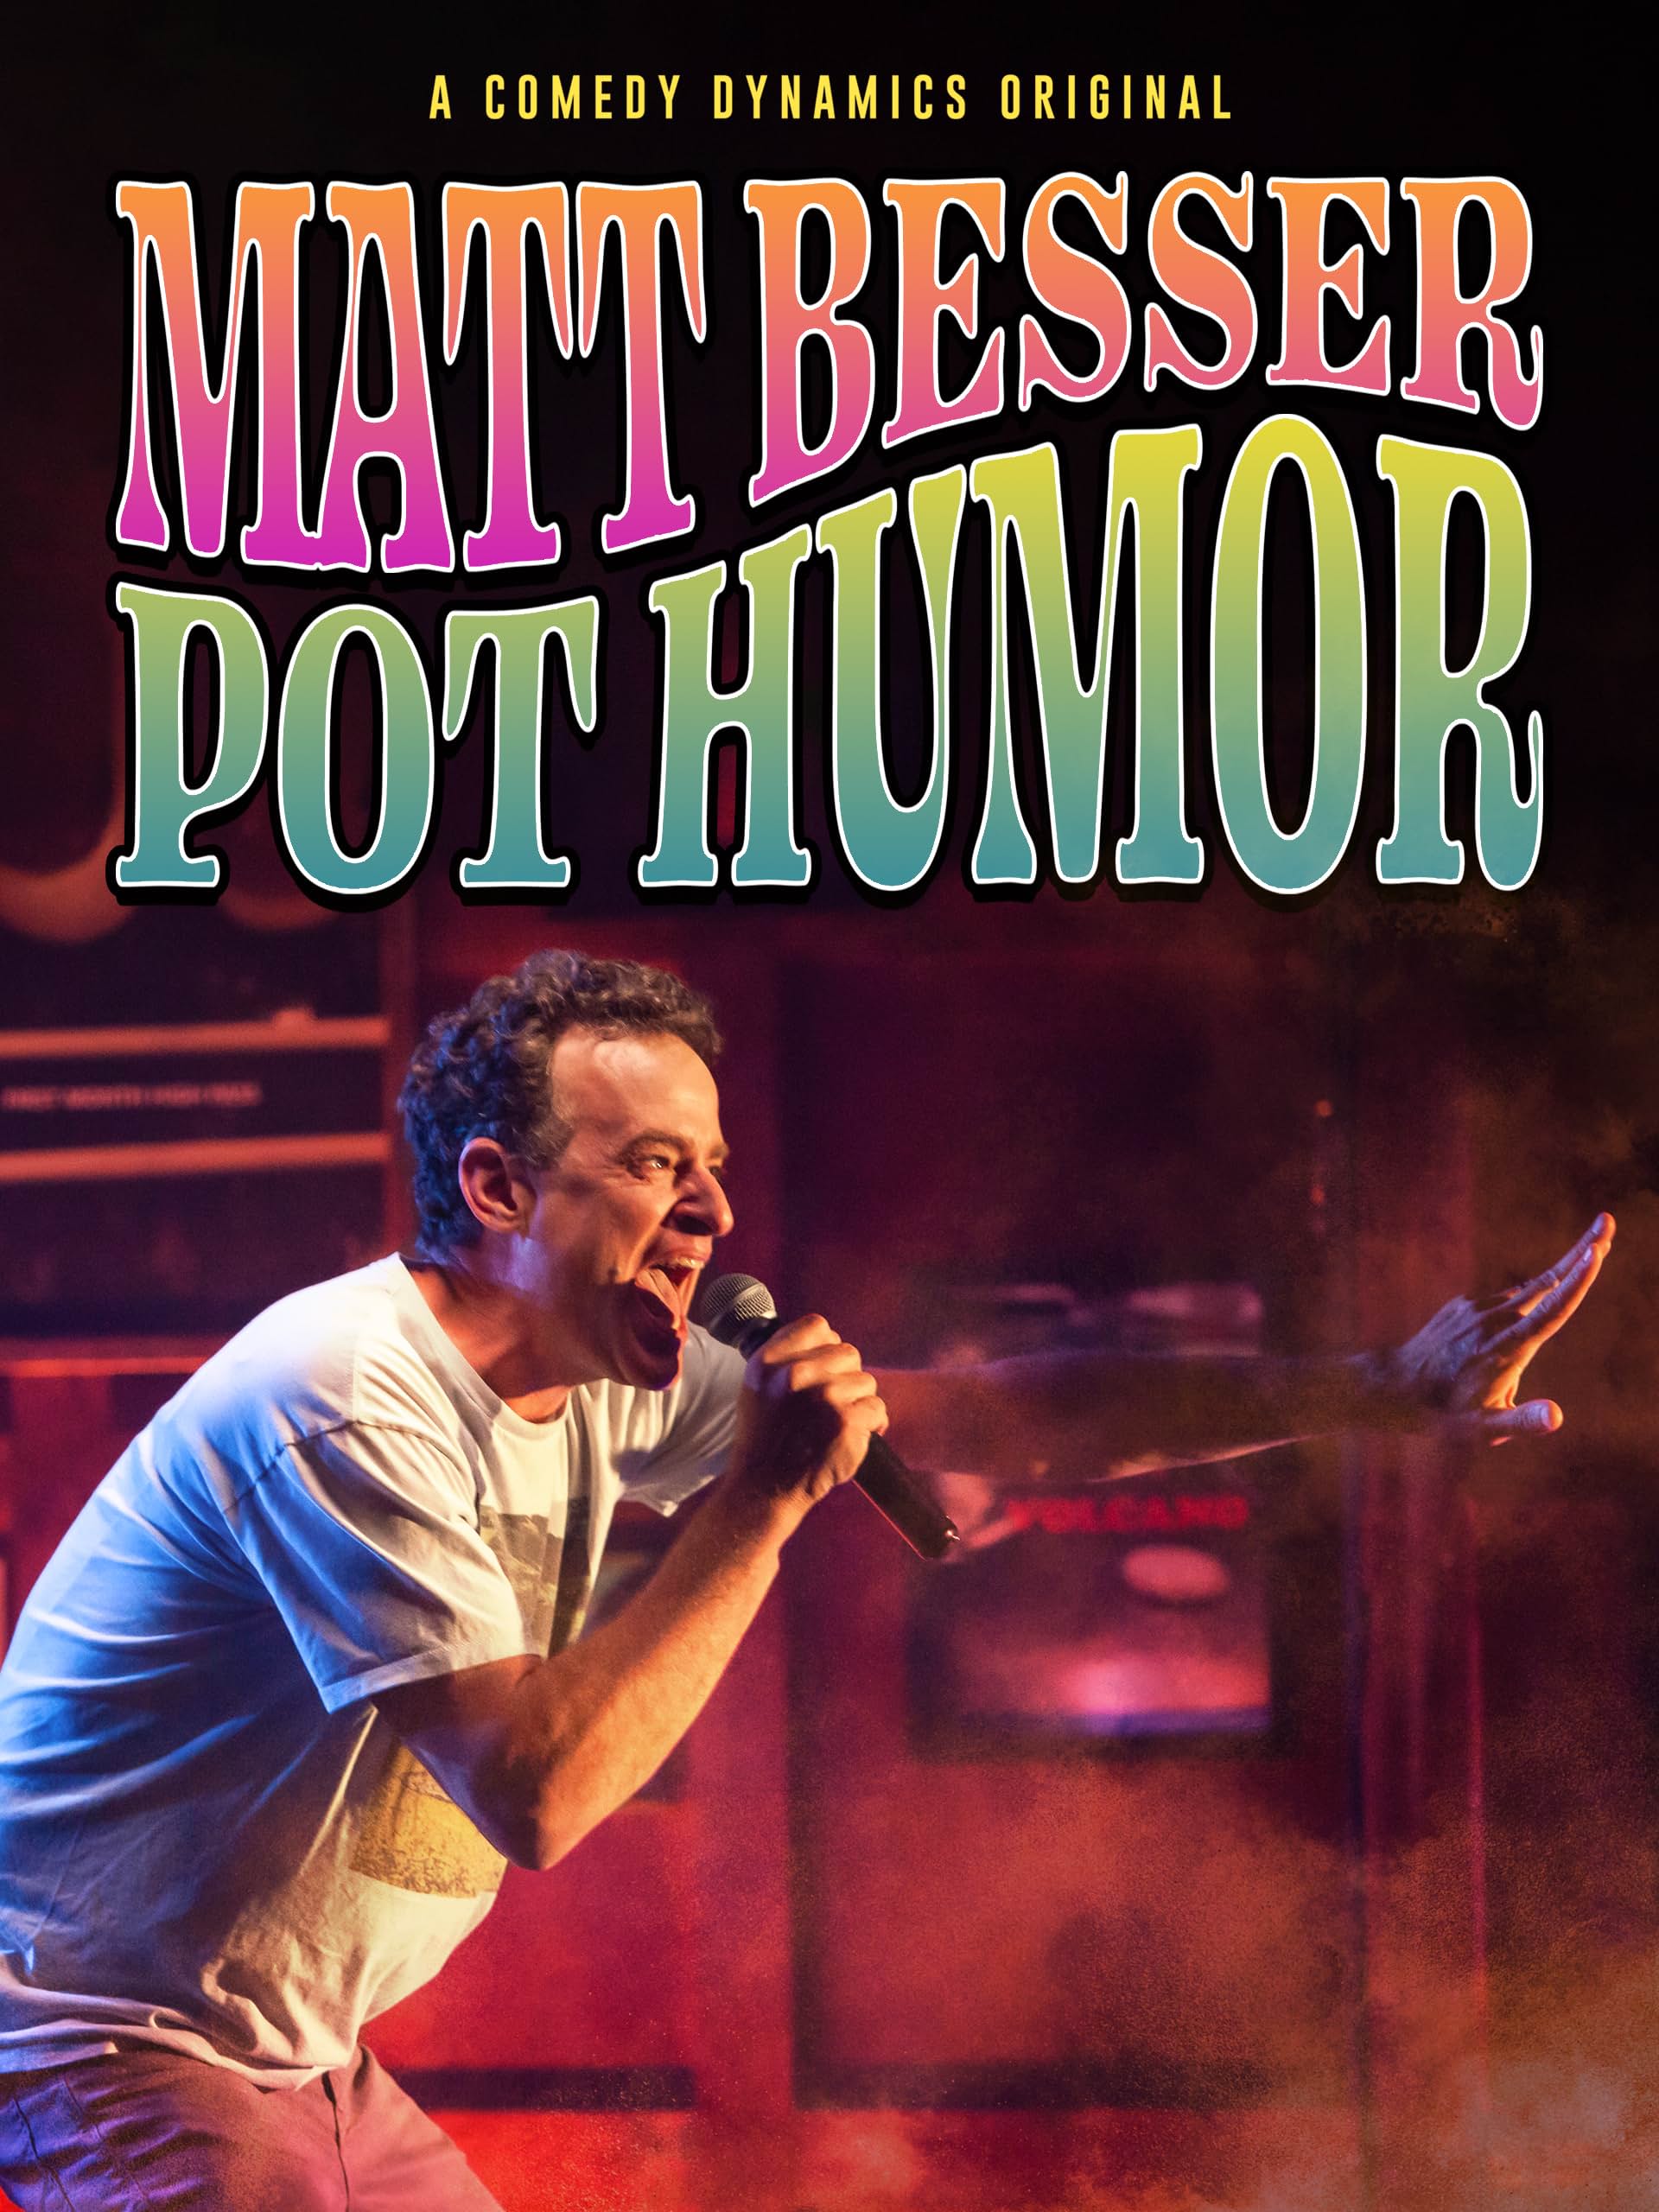     Matt Besser: Pot Humor